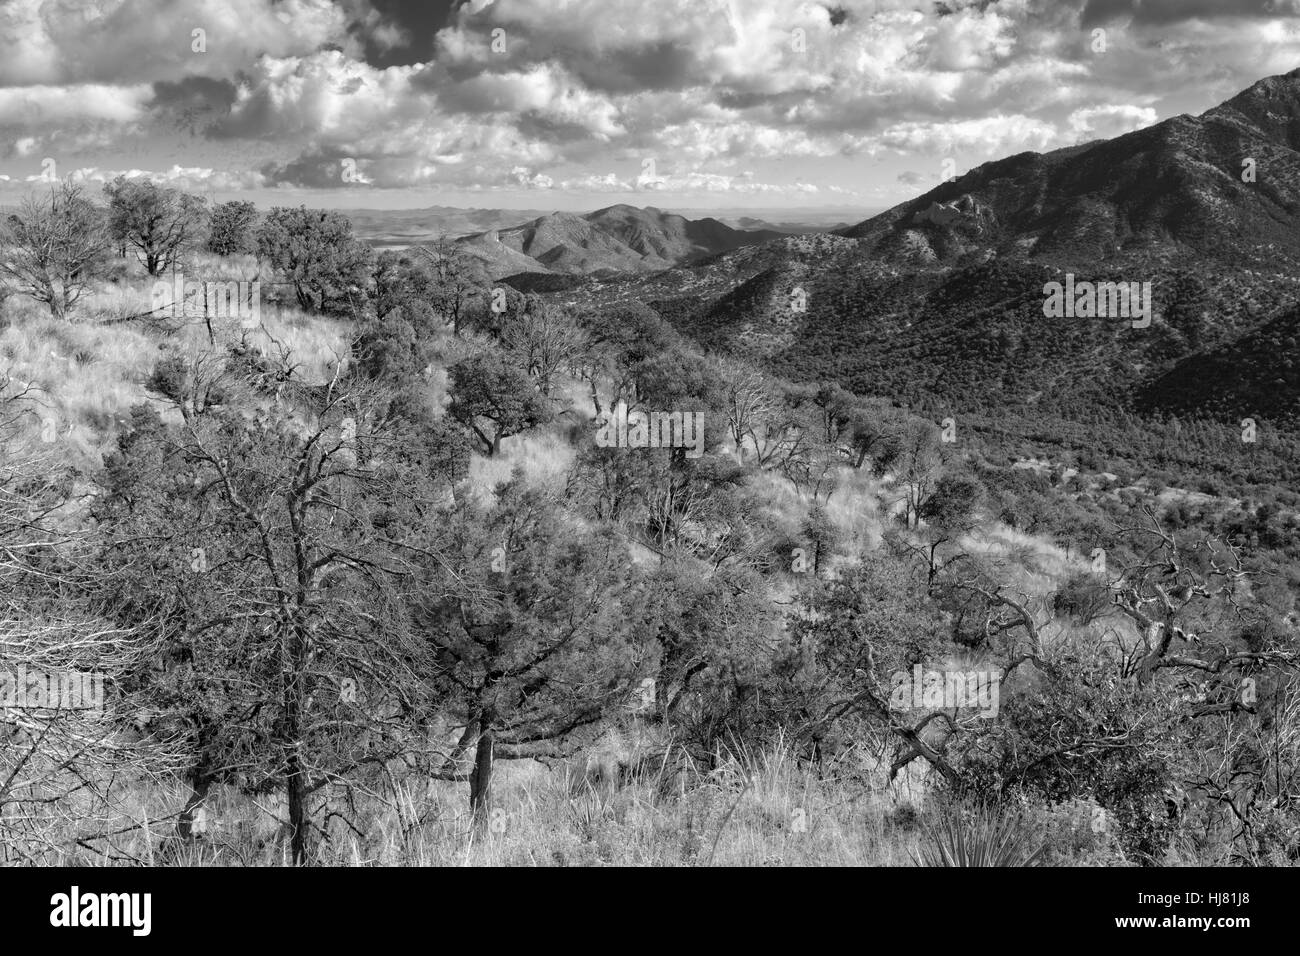 Chiricahua Mountain Wilderness View, Arizona Stock Photo